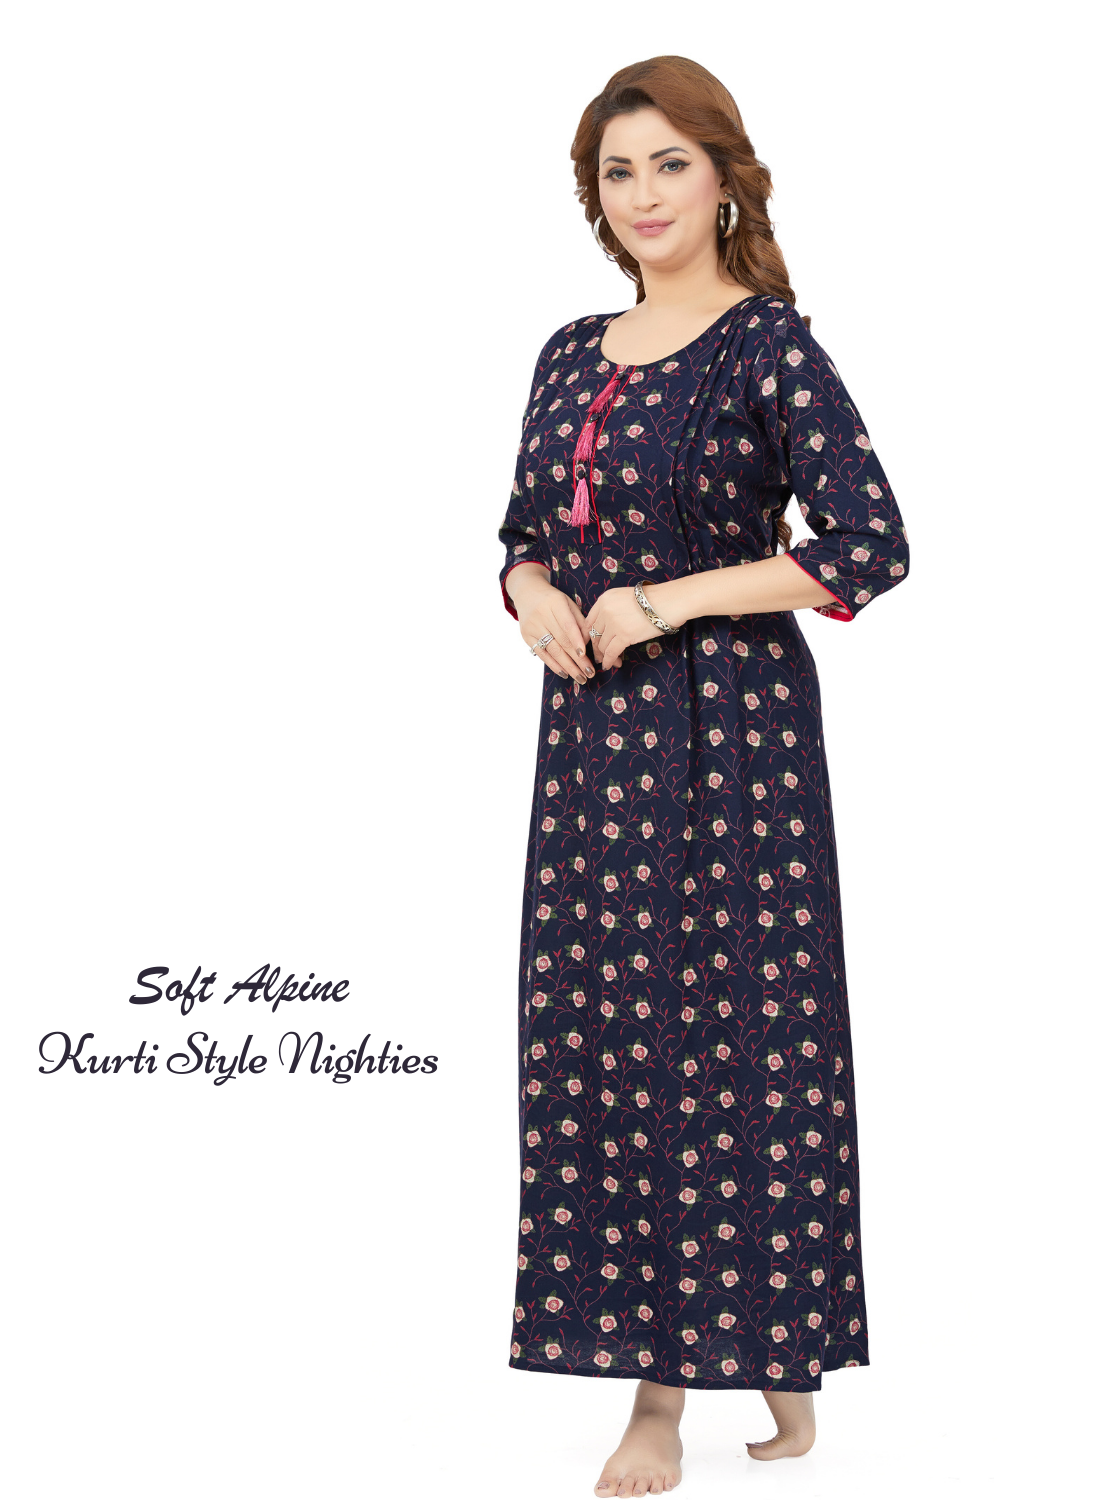 Stylish Arrivals MANGAI Alpine KURTI Style | Beautiful Stylish KURTI Model | Fresh Collection's for Stylish Women's